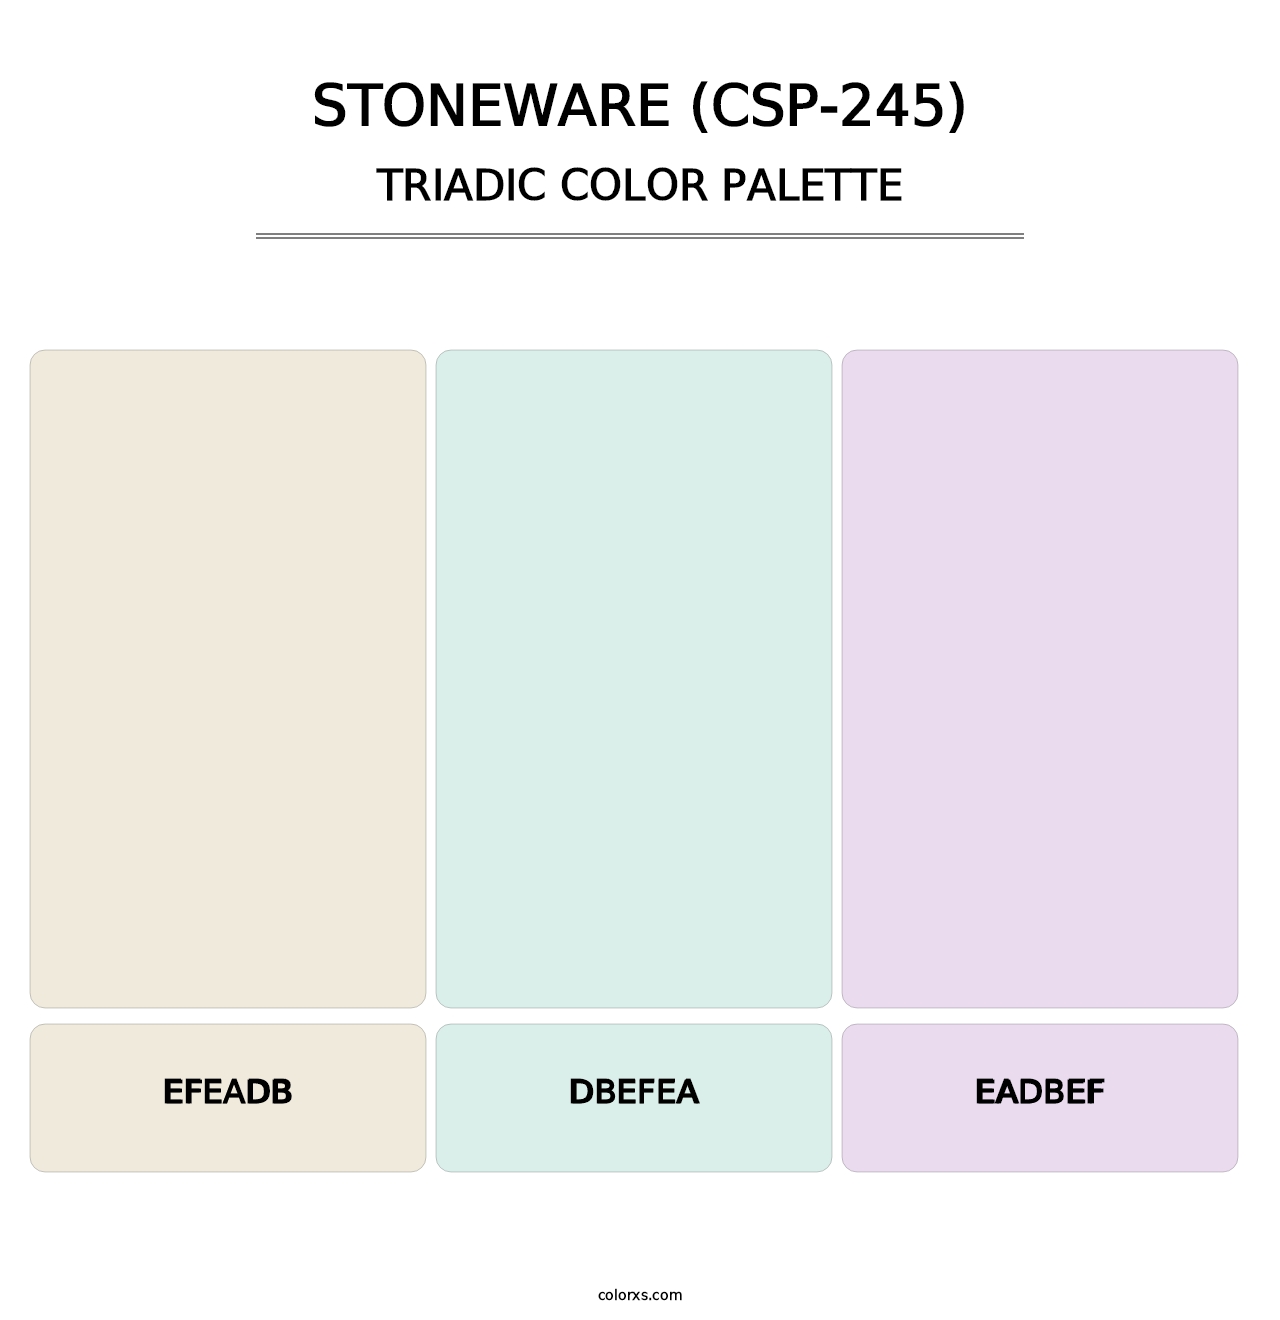 Stoneware (CSP-245) - Triadic Color Palette